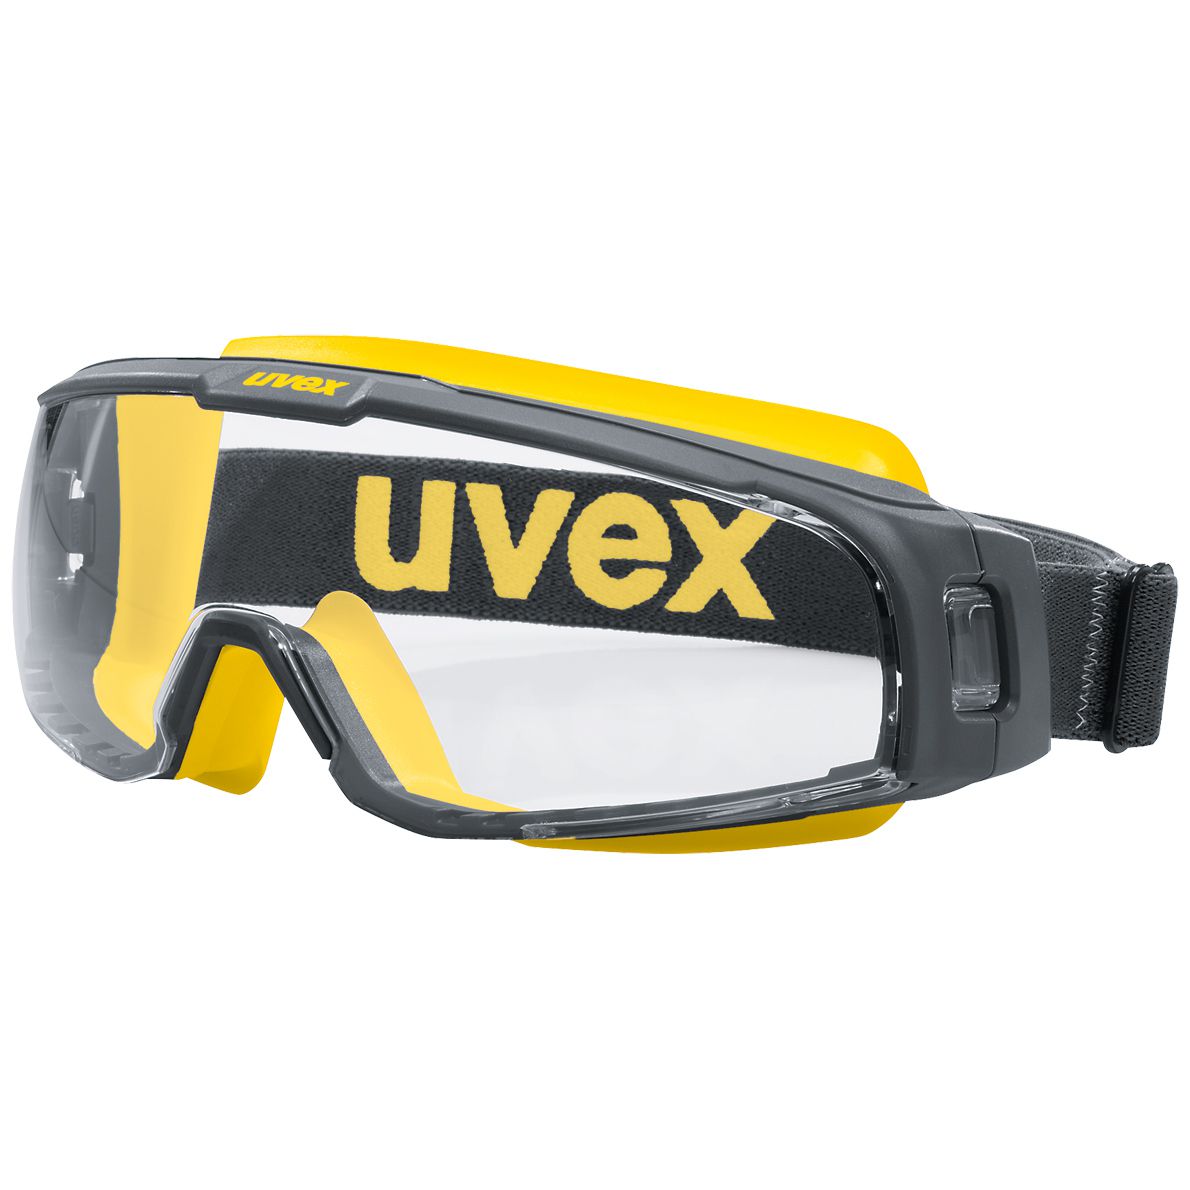 uvex u-sonic 9308 Schutzbrille - kratz- & beschlagfest dank supravision extreme - EN 166/170 - Grau-Gelb/Klar